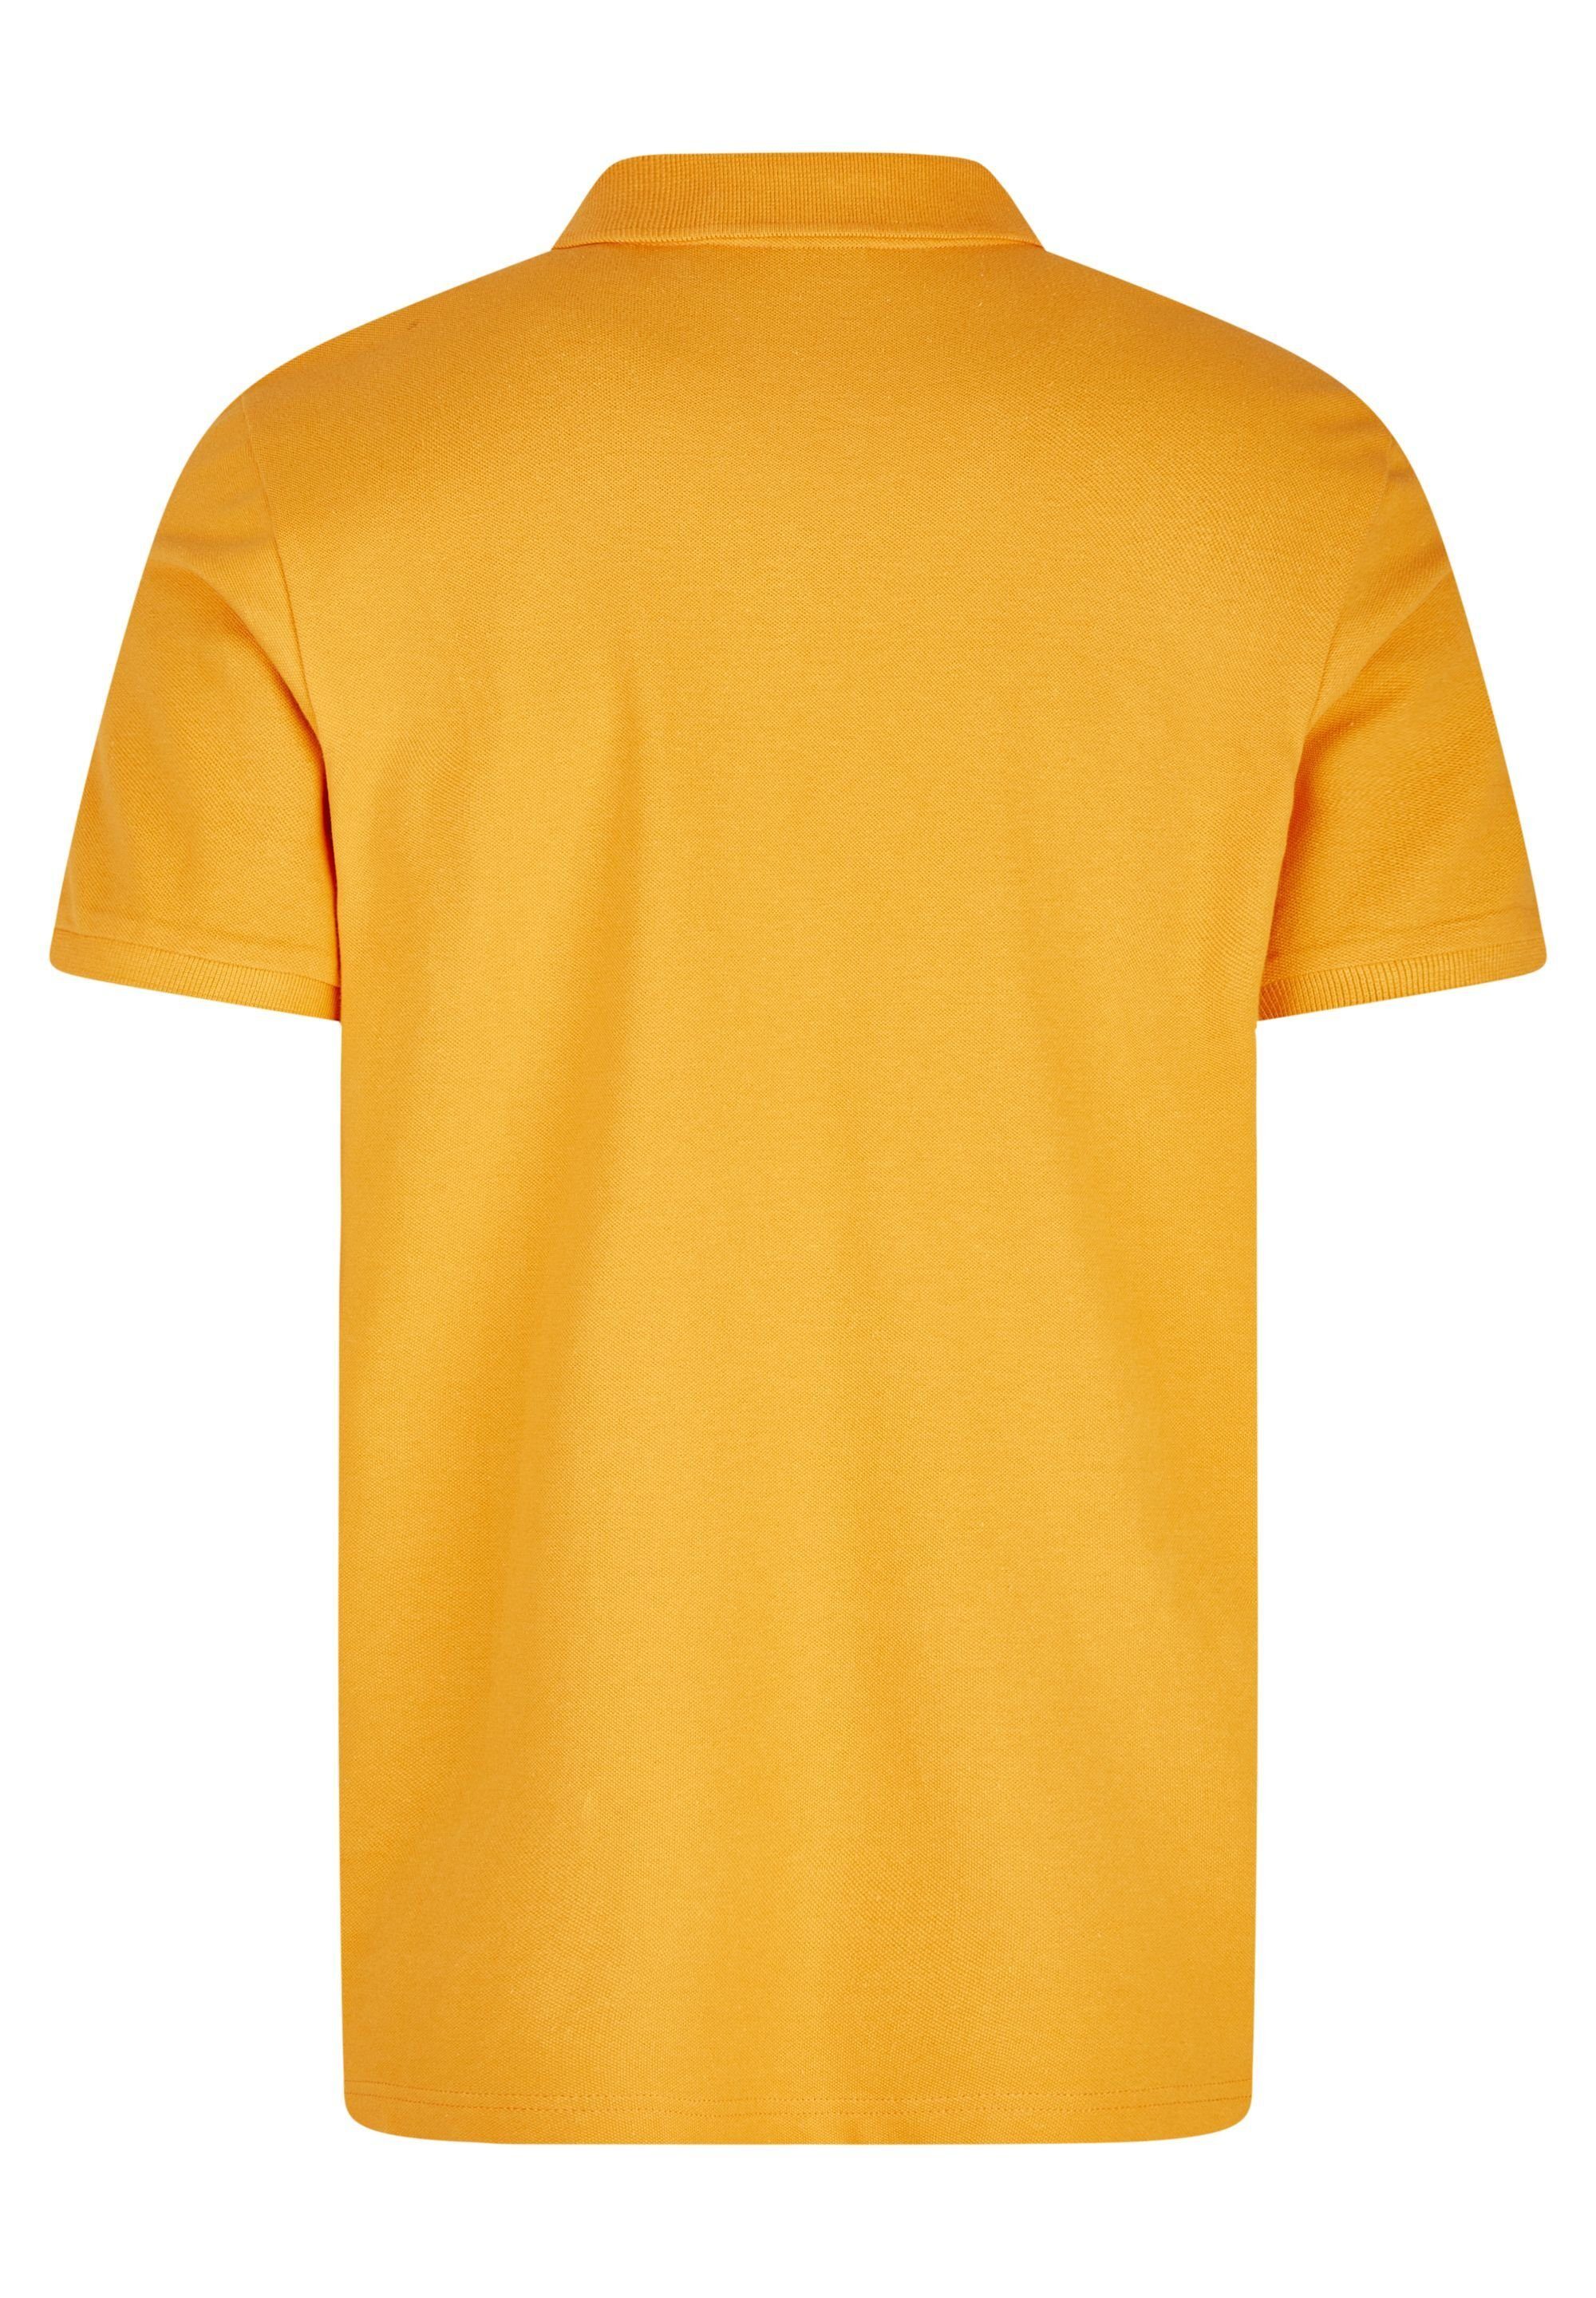 HECHTER orange Poloshirt polokrage PARIS mit